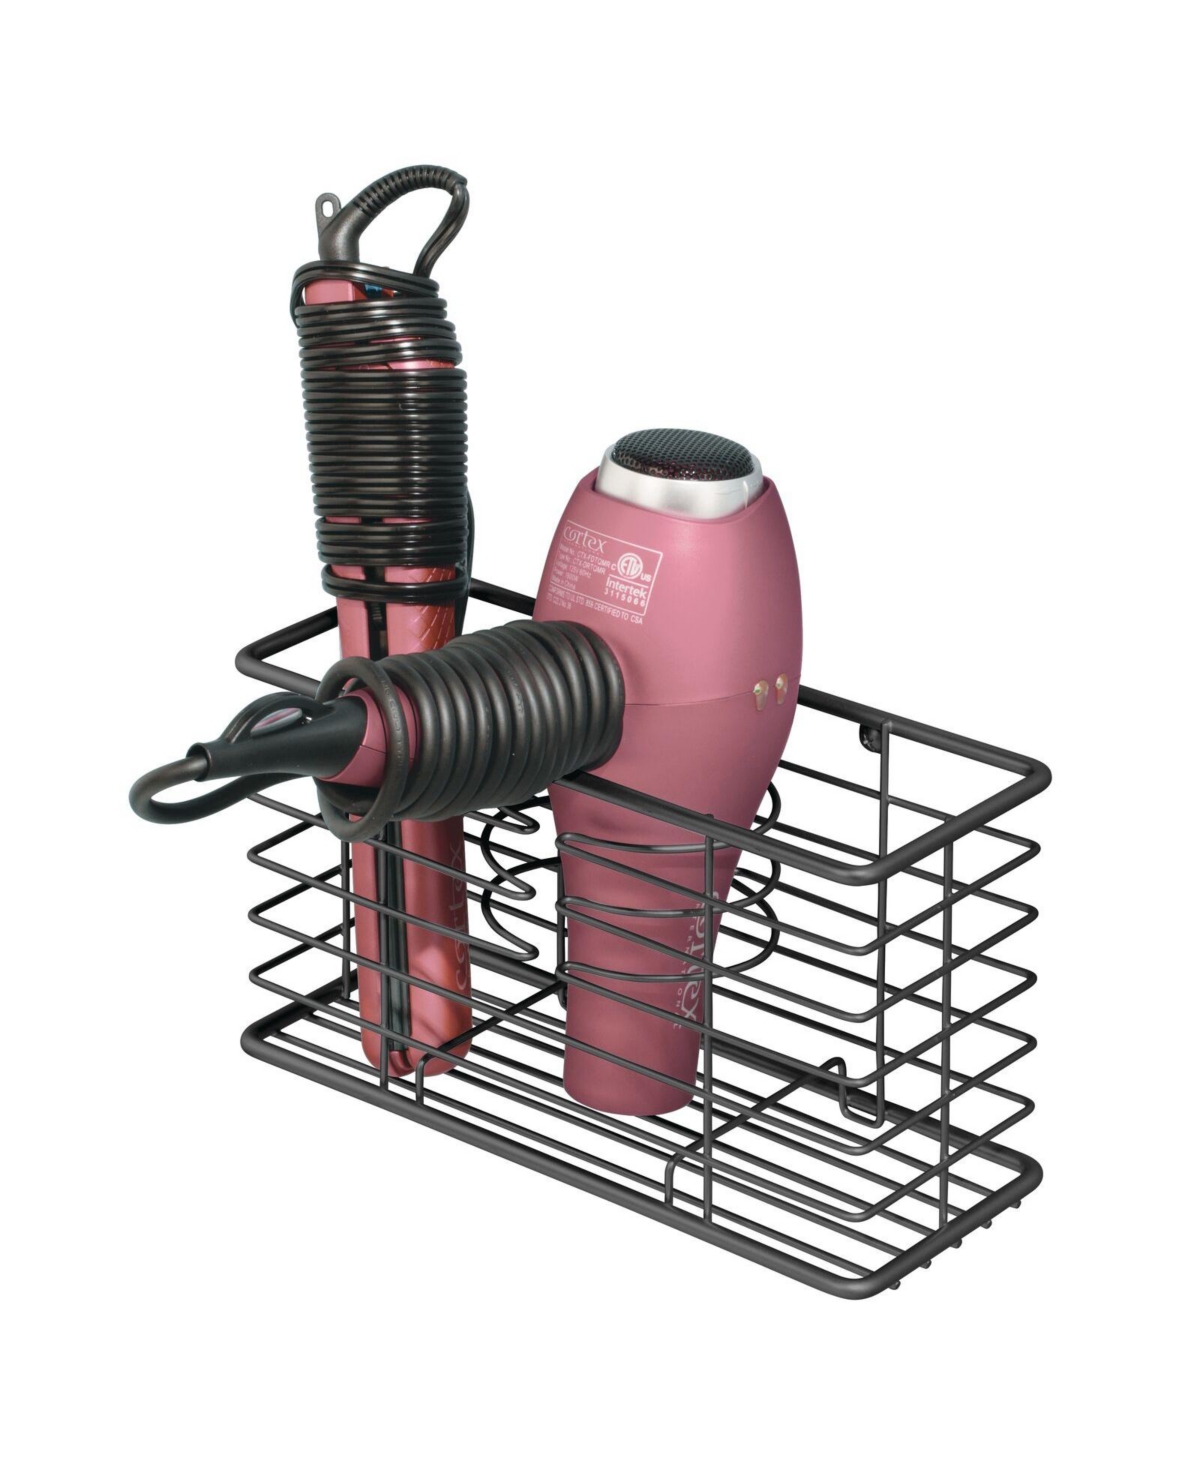 mDesign Steel Freestanding 3-Tier Storage Organizer Tower with Baskets -  Black